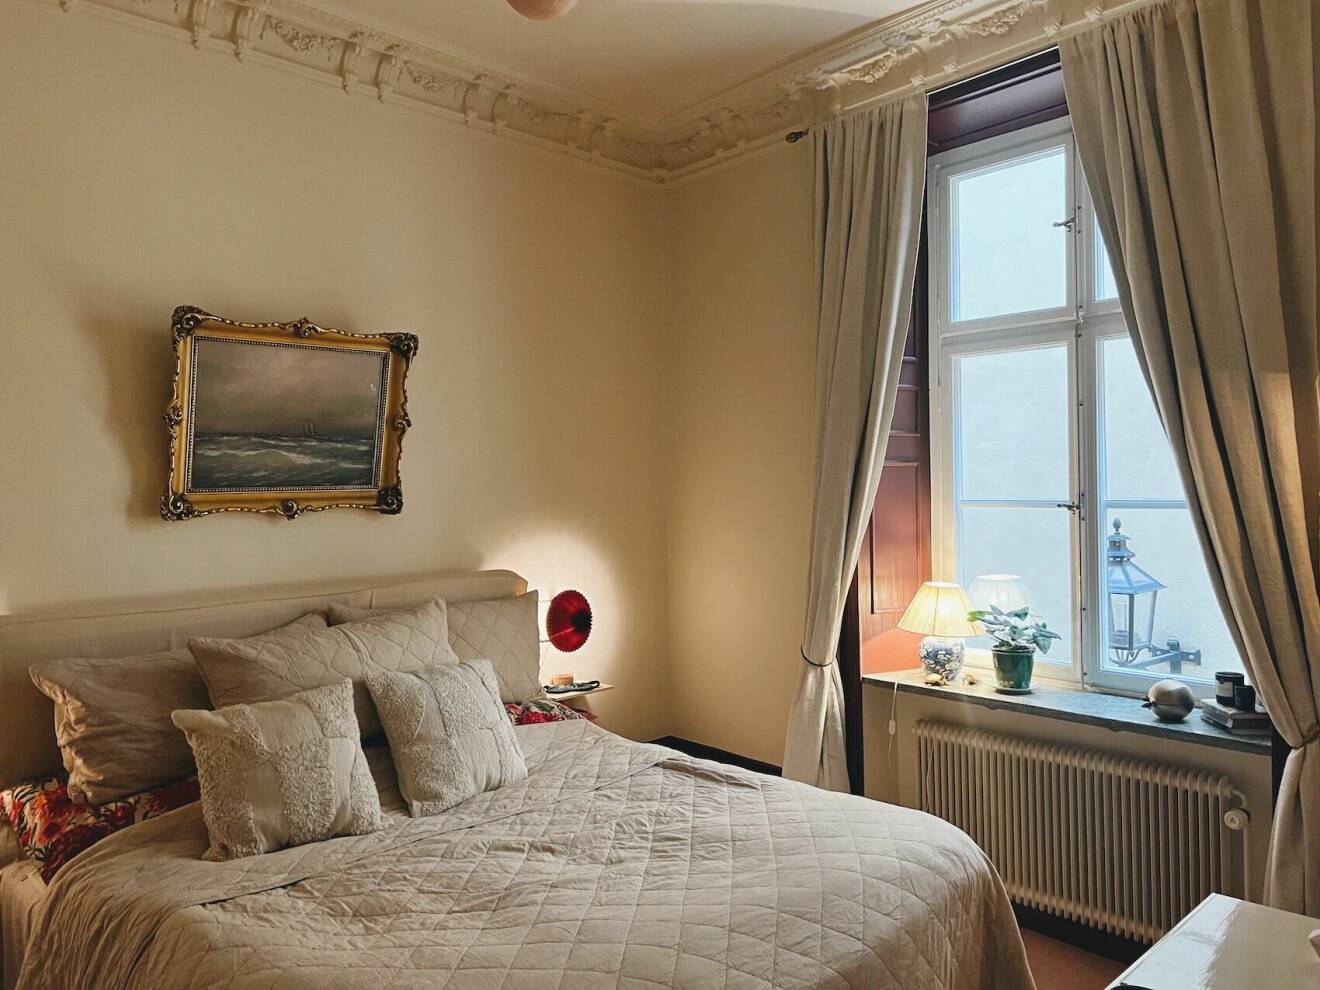 Sandra Beijers sovrum i lägenhet i gamla stan i stockholm